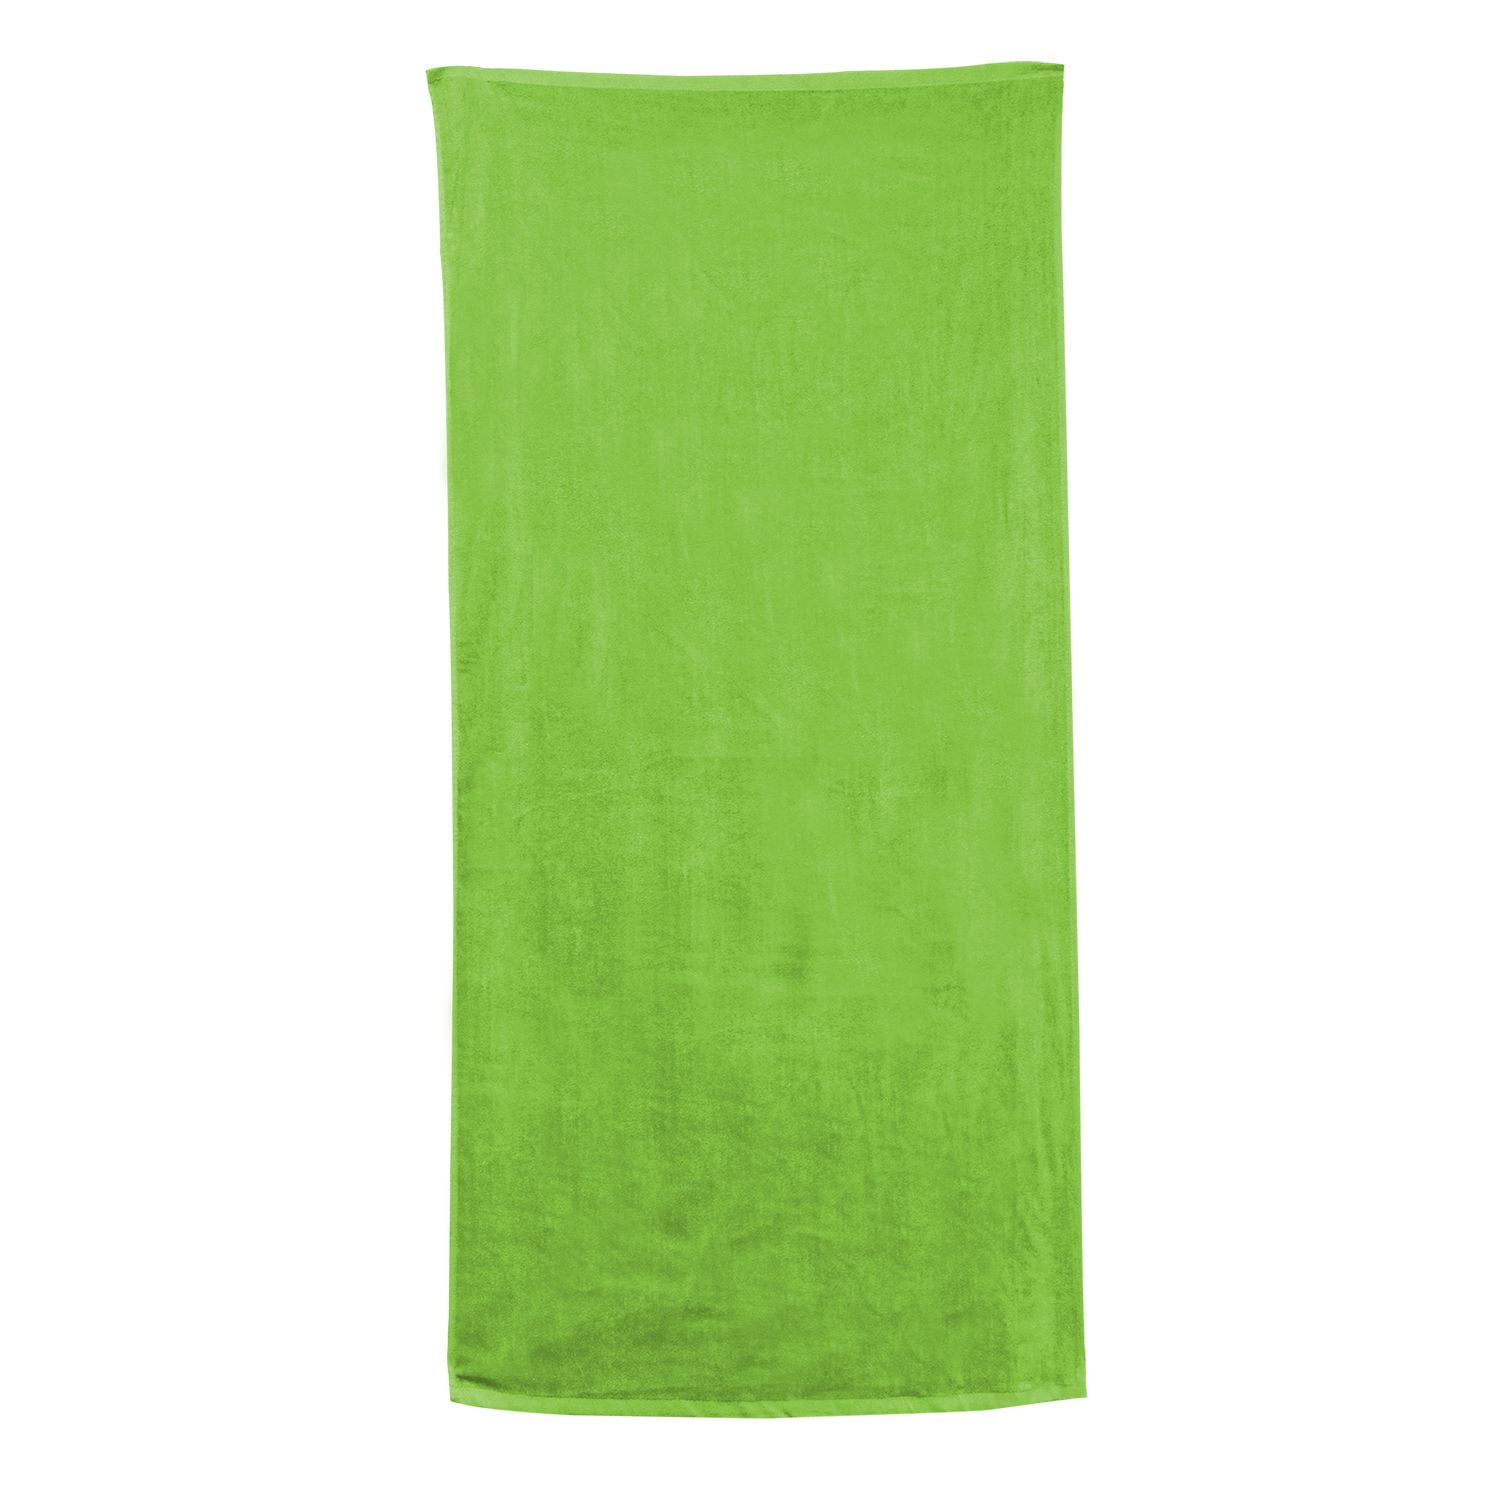 Velour Beach Towel - Kiwi - One Size - Walmart.com